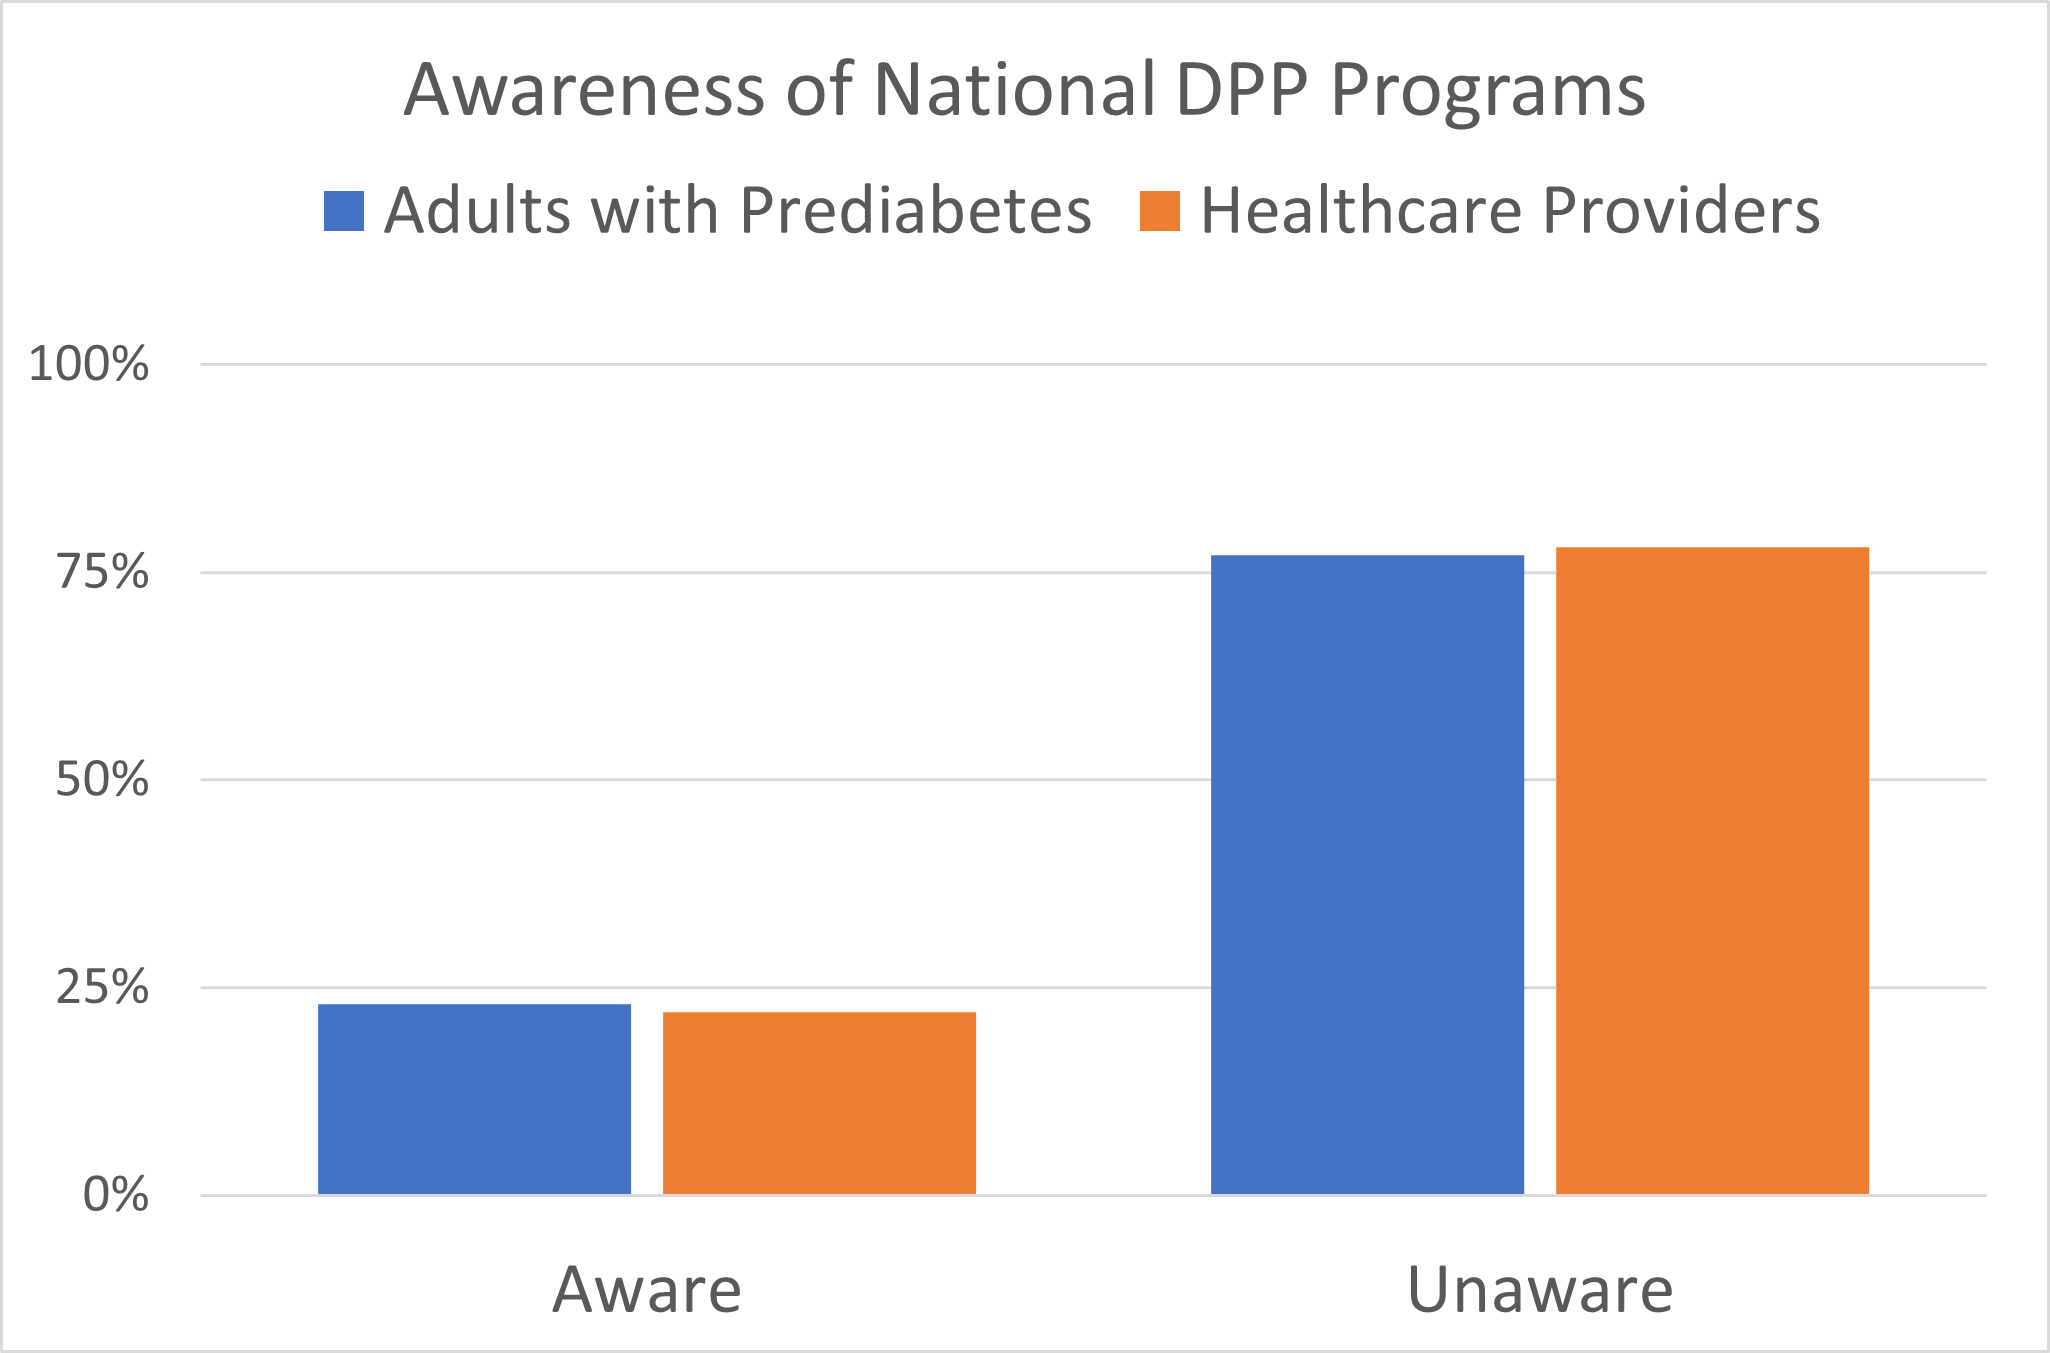 bar chart of awareness of NDPP programs